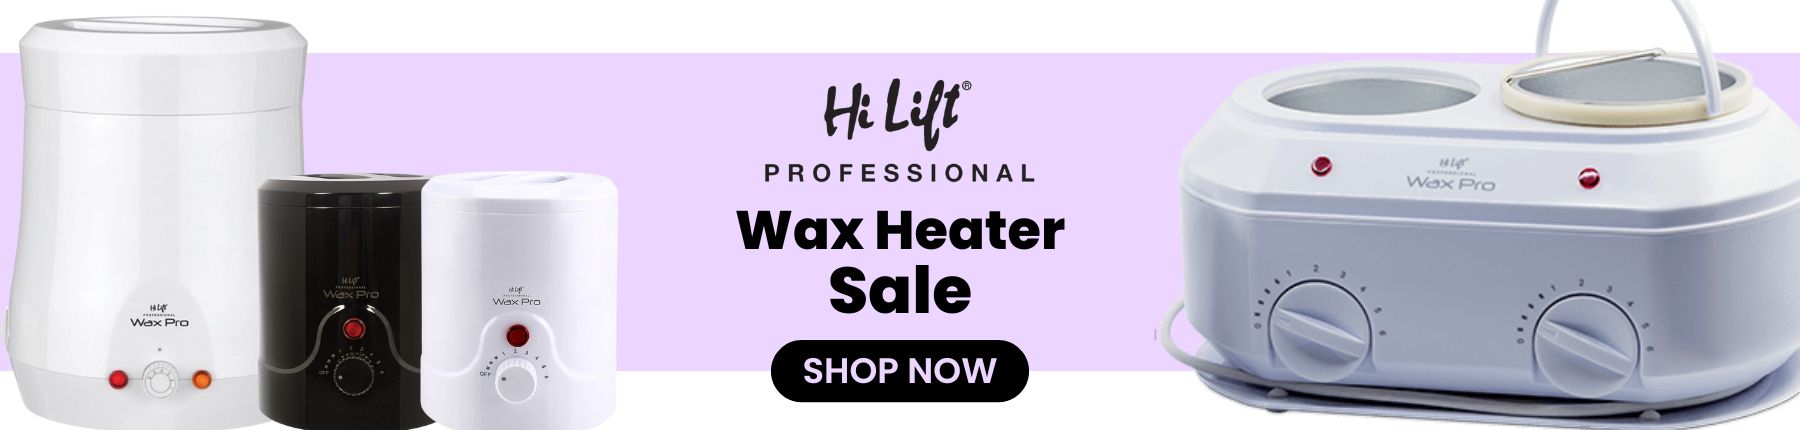 Hi Lift wax heater sale